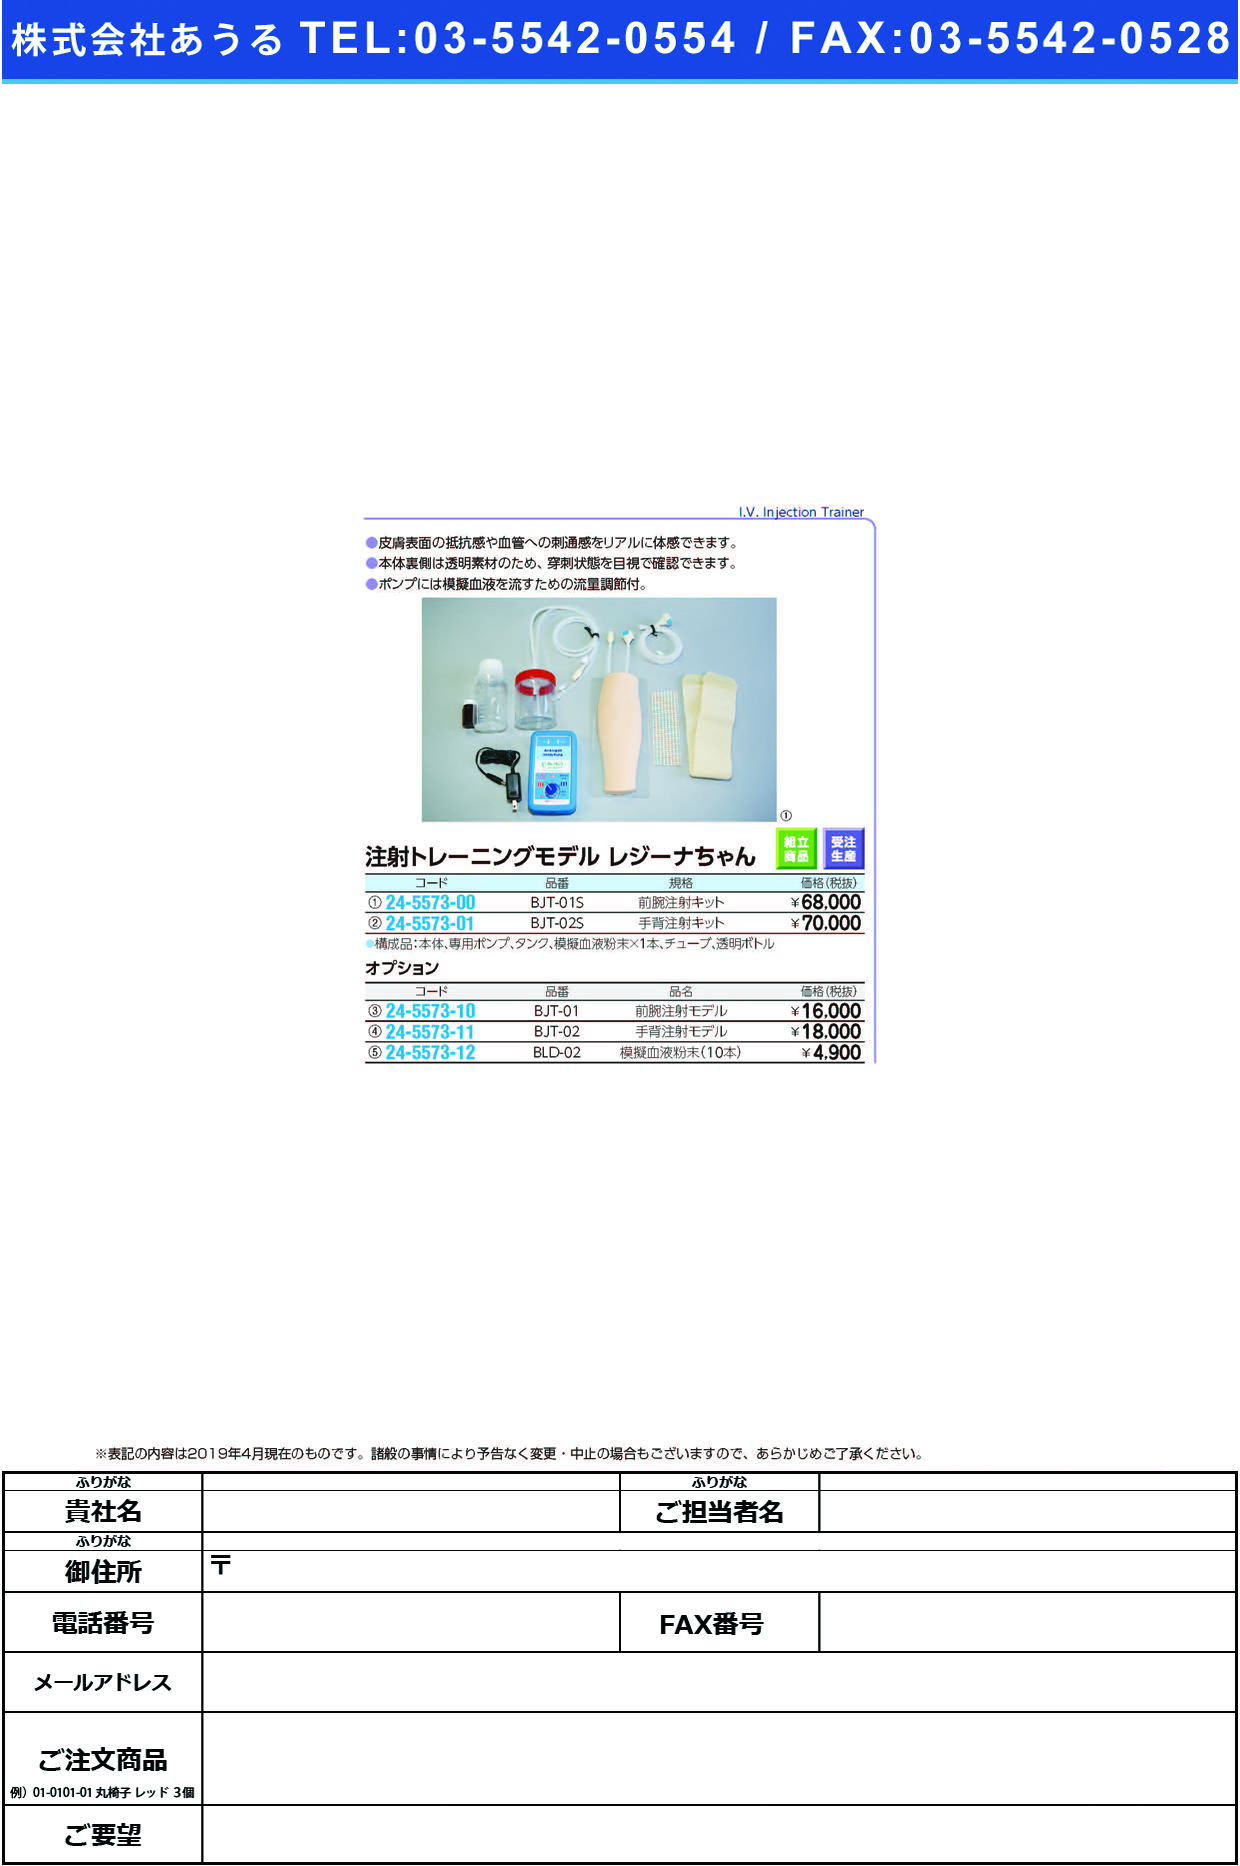 (24-5573-01)注射トレーニングモデルレジーナちゃん BJT-02S(ｼｭﾊｲﾁｭｳｼｬ) ﾁｭｳｼｬﾄﾚｰﾆﾝｸﾞﾓﾃﾞﾙ【1組単位】【2019年カタログ商品】